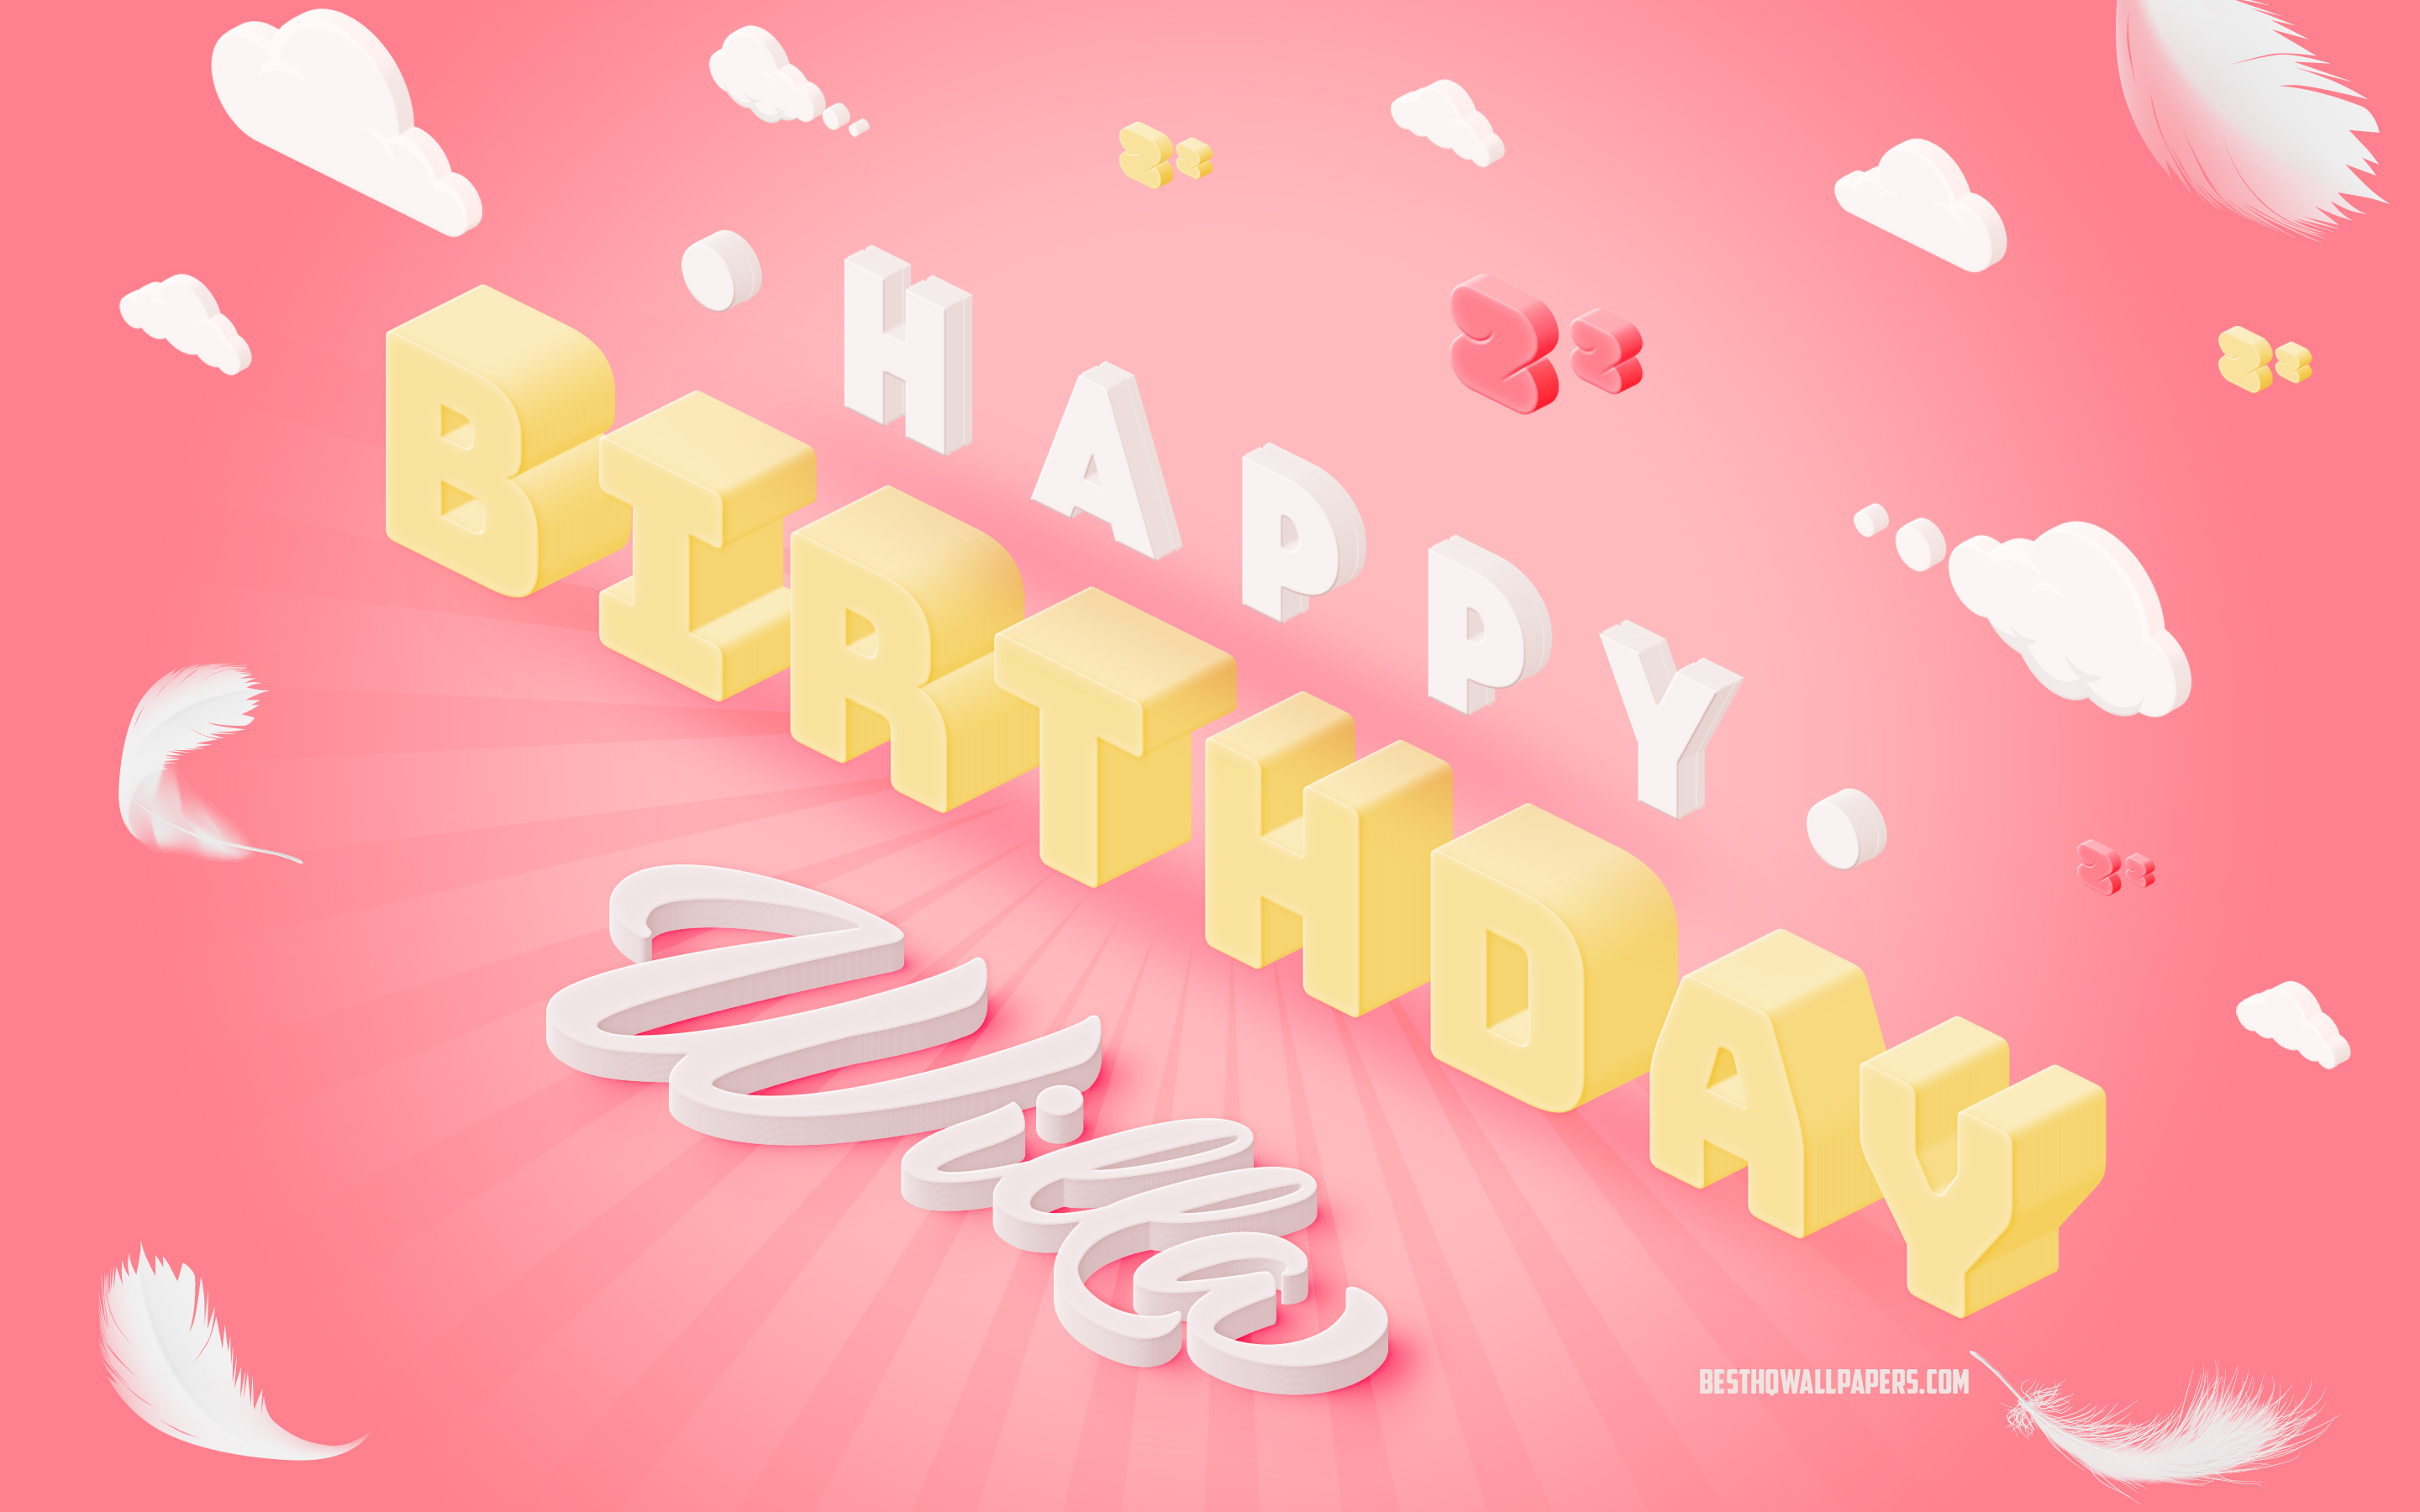 Buon Compleanno Willa, Arte 3d, Compleanno Sfondo 3d, Willa, Sfondo Rosa, Lettere 3D, Compleanno Willa, Sfondo Di Compleanno Creativo